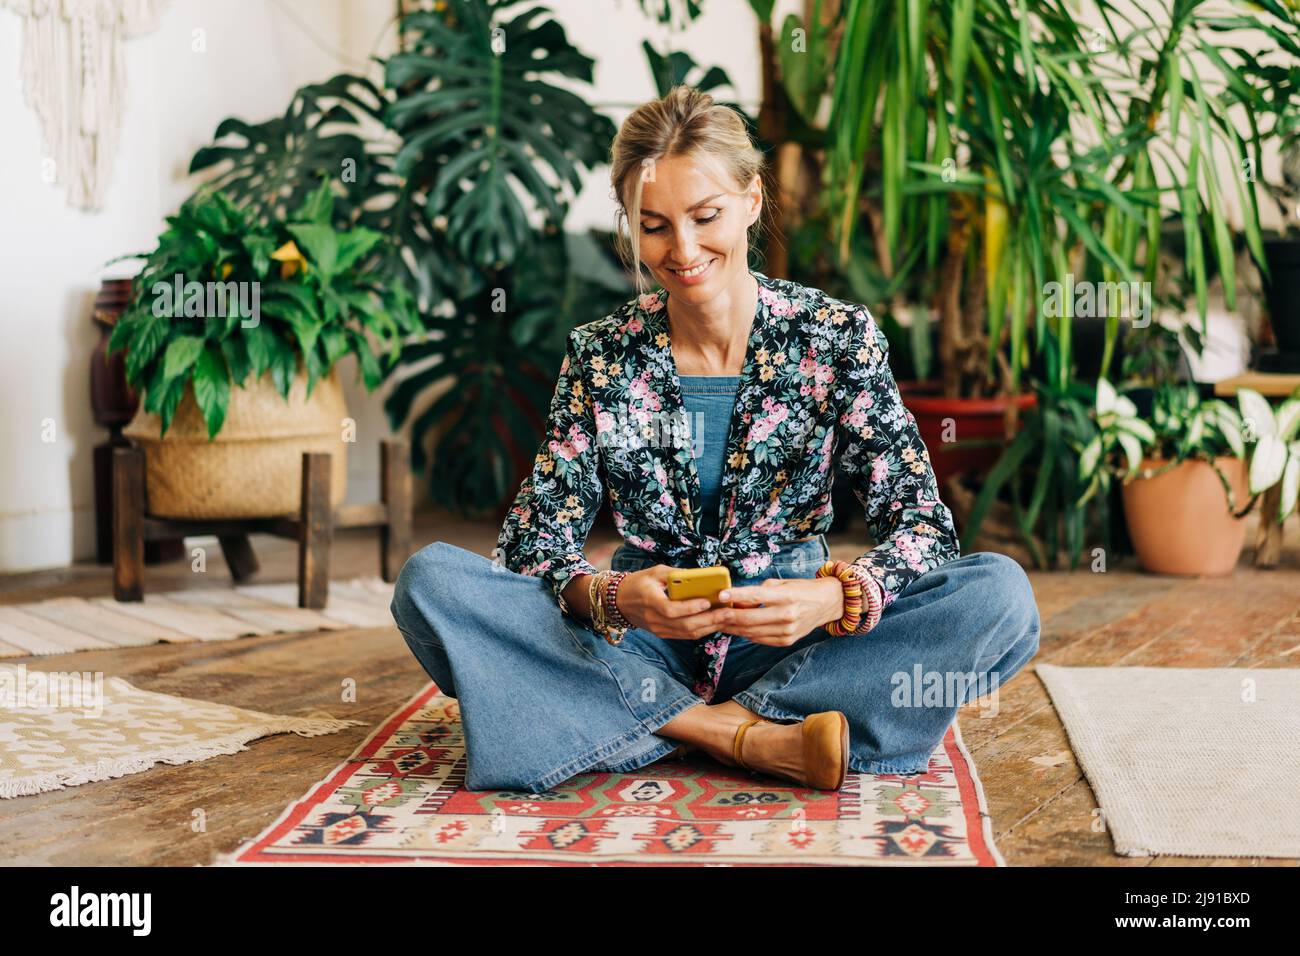 Donna sorridente felice seduta a gambe incrociate sul pavimento leggendo un feed di notizie sul suo telefono. Foto Stock